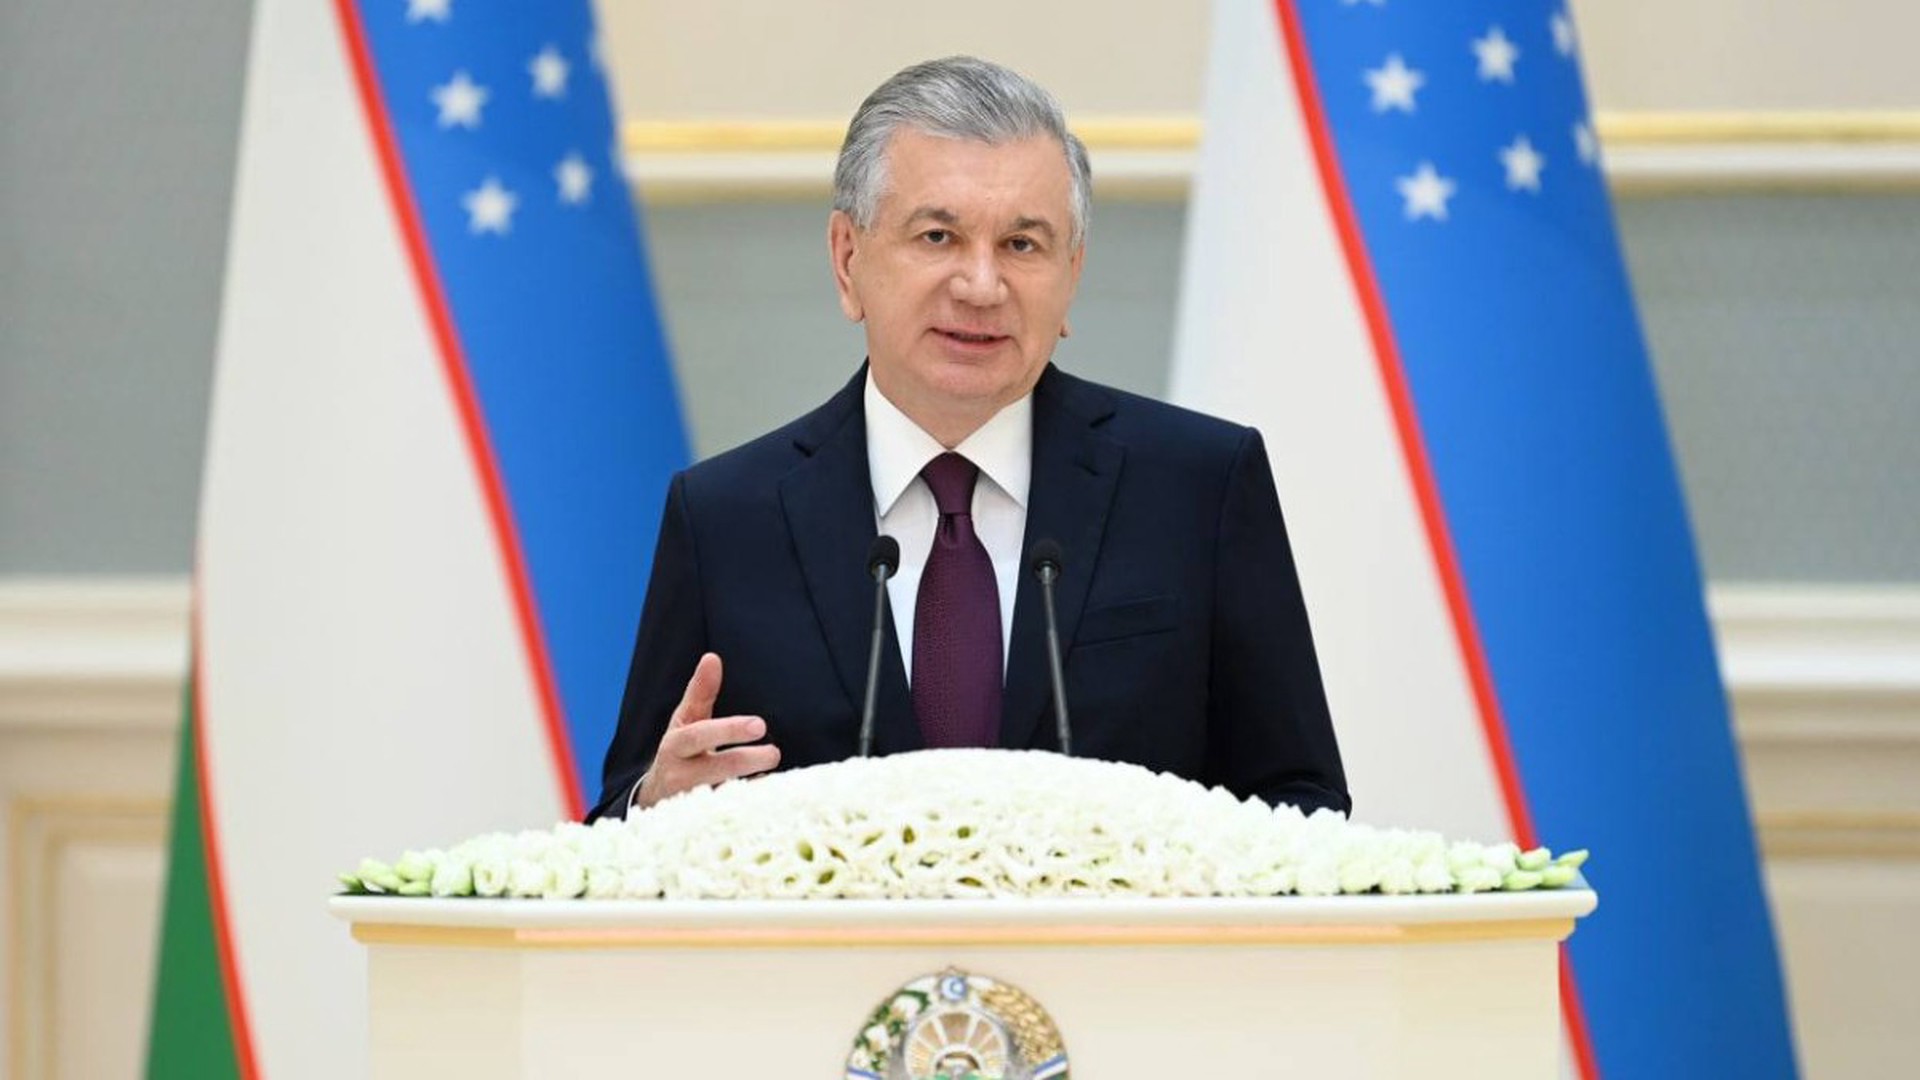 В Узбекистане пройдут досрочные президентские выборы